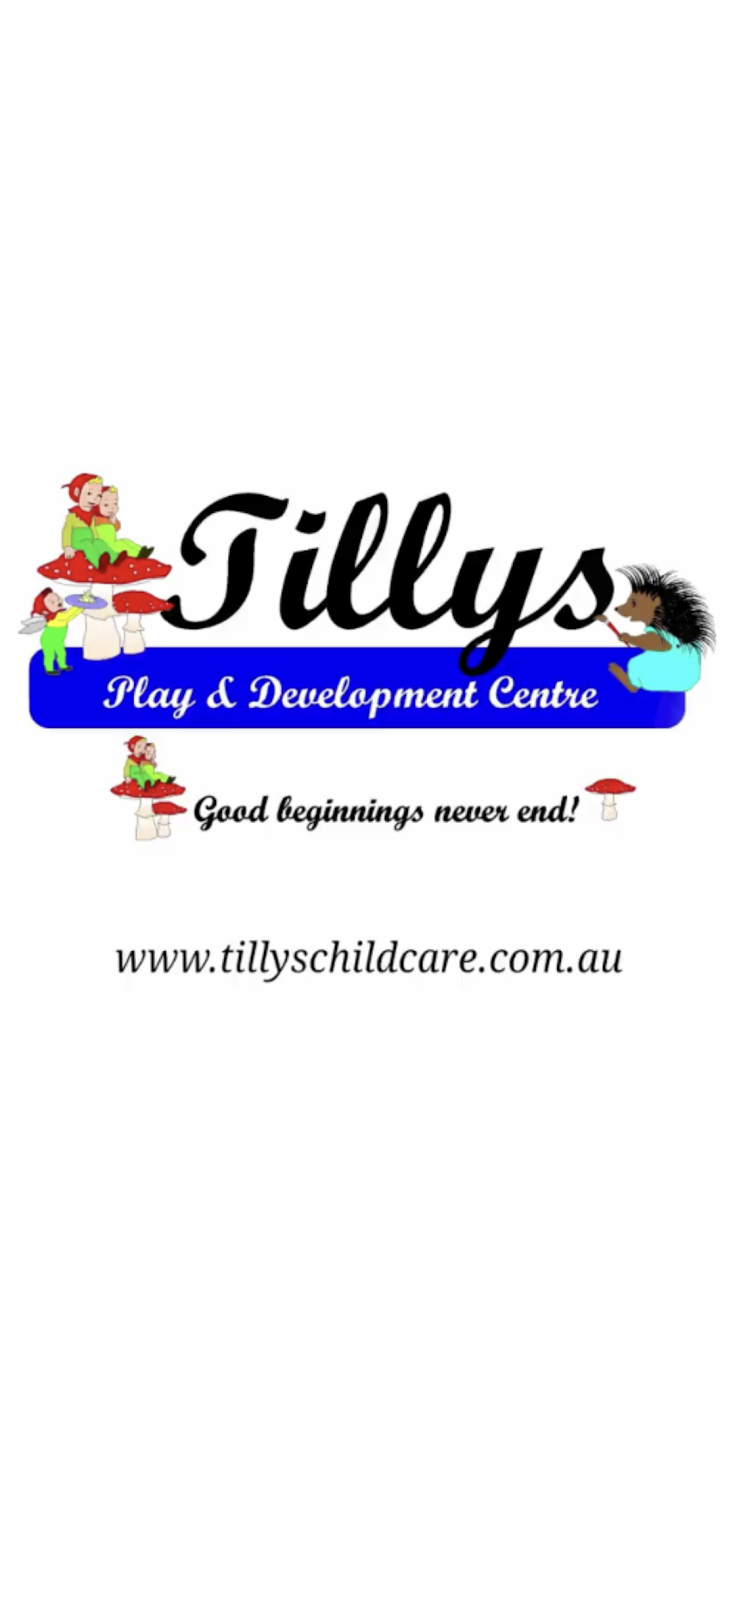 Tillys Play & Development Centre Abermain | Cnr Bathurst &, Melbourne St, Abermain NSW 2326, Australia | Phone: (02) 4930 4010